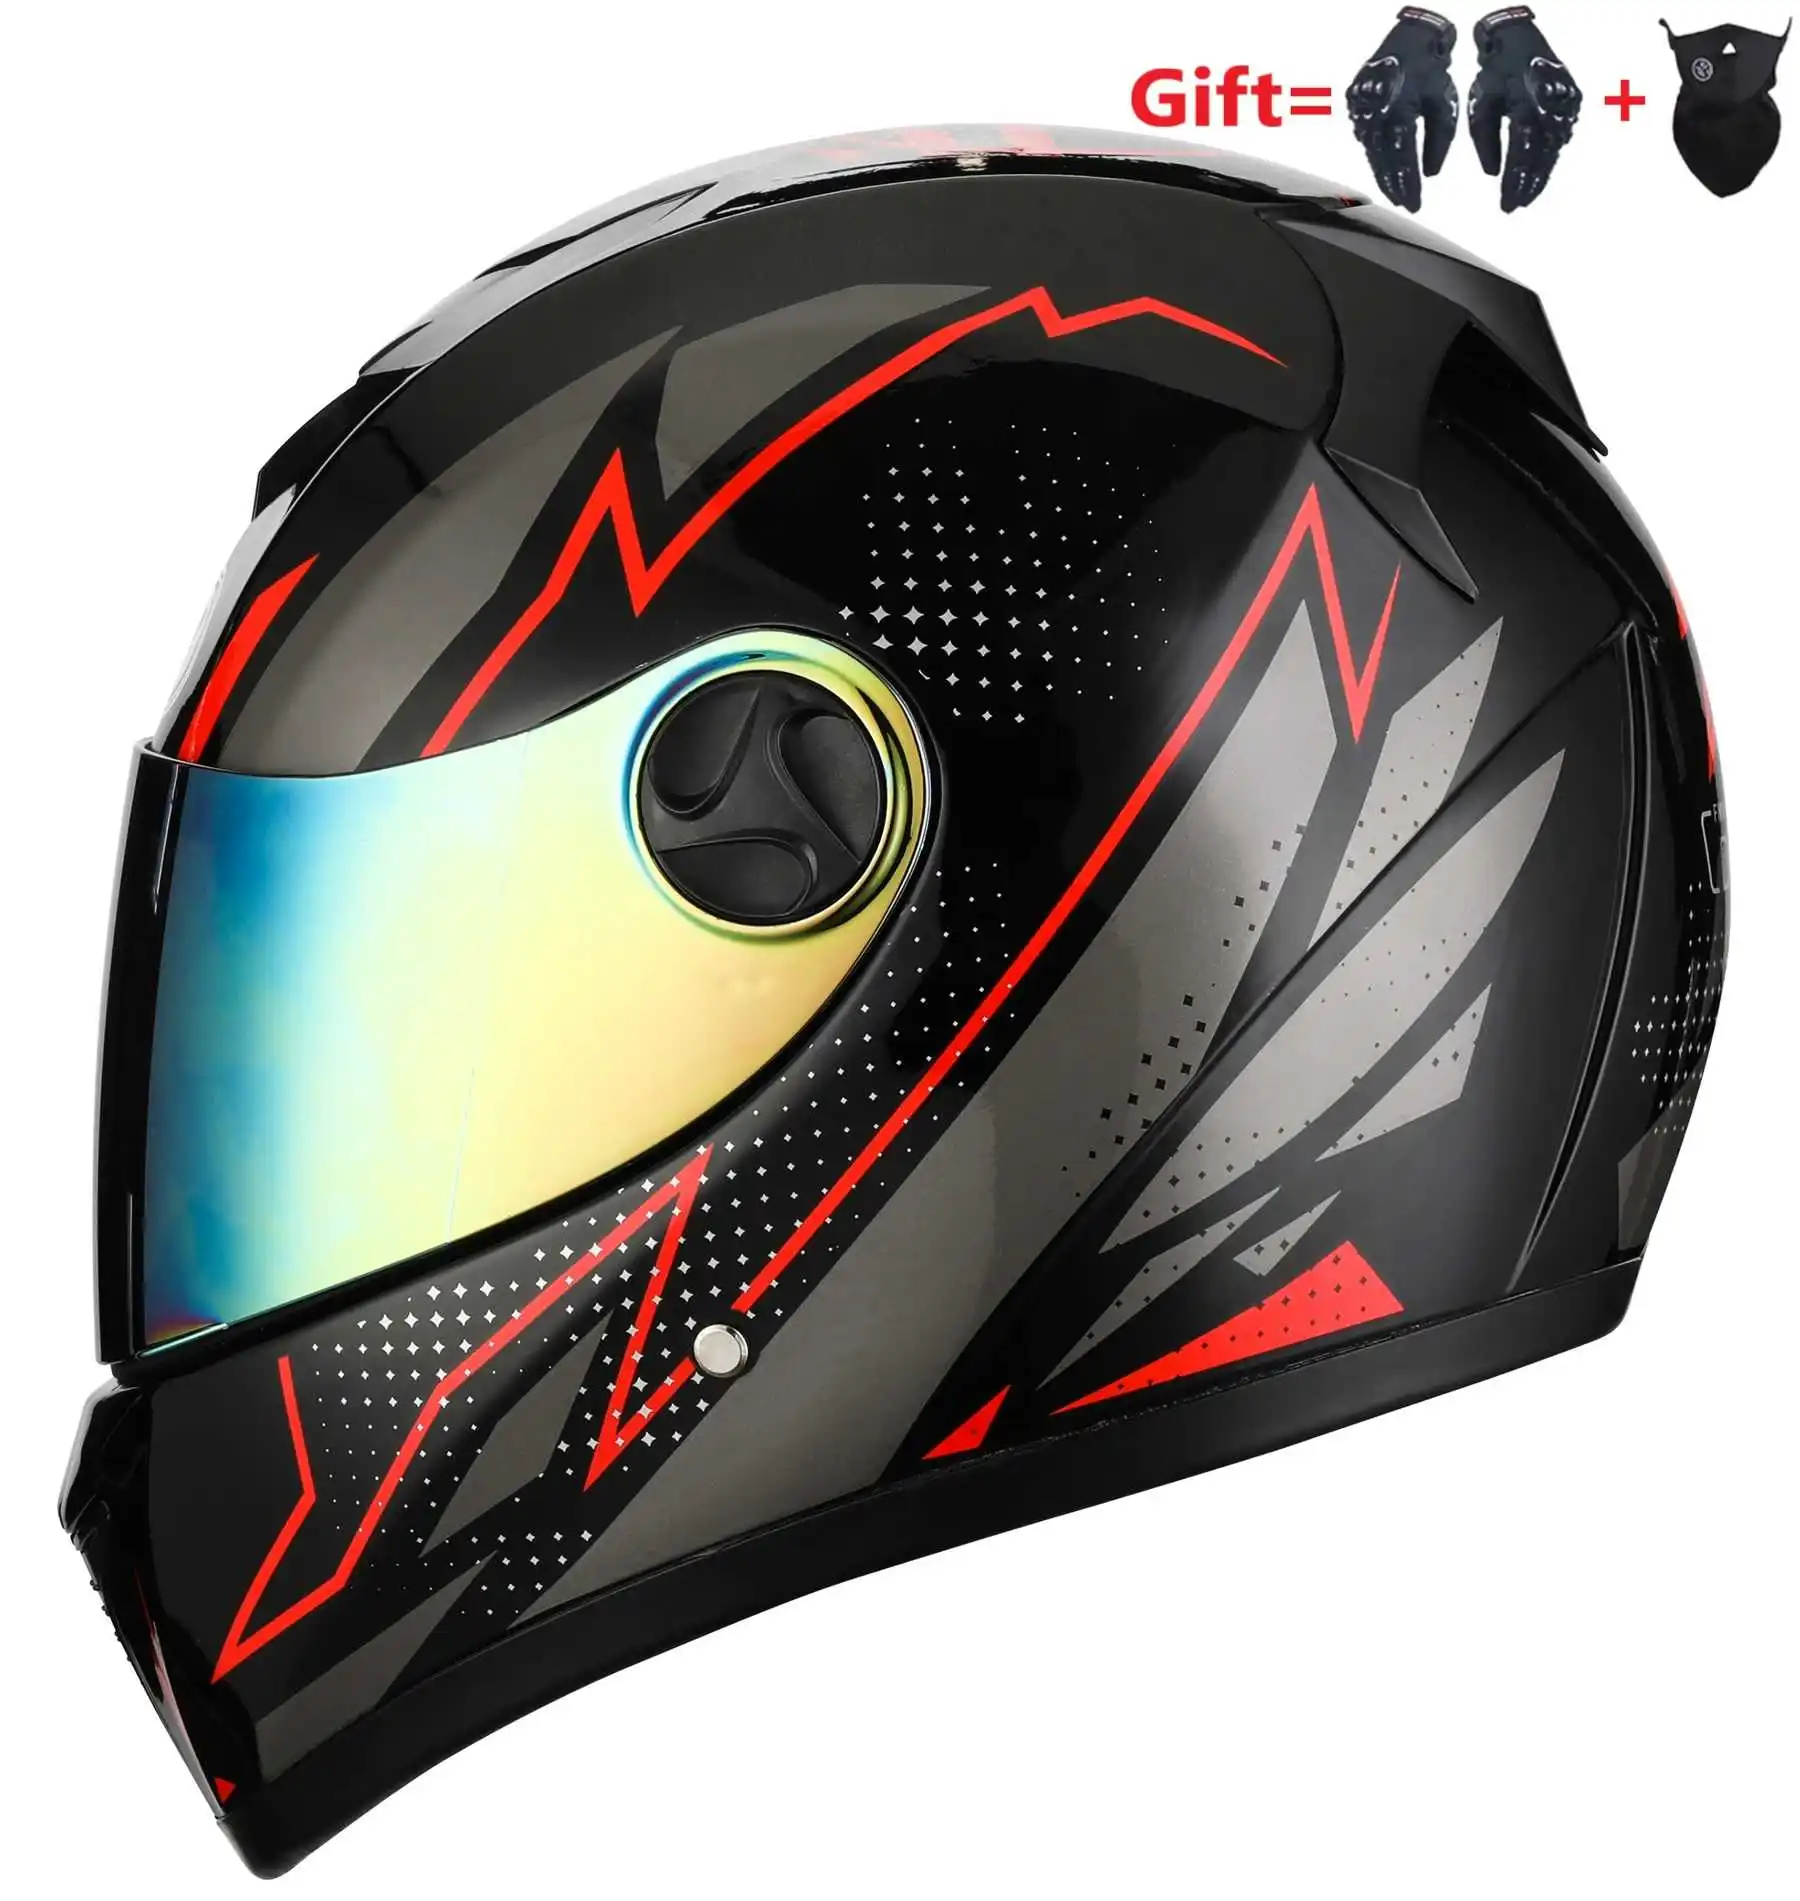 

Мотоциклетный шлем на все лицо, шлем для мотокросса с двойными линзами, мотошлем для езды на мотоцикле и велосипеде по бездорожью, для взрос...